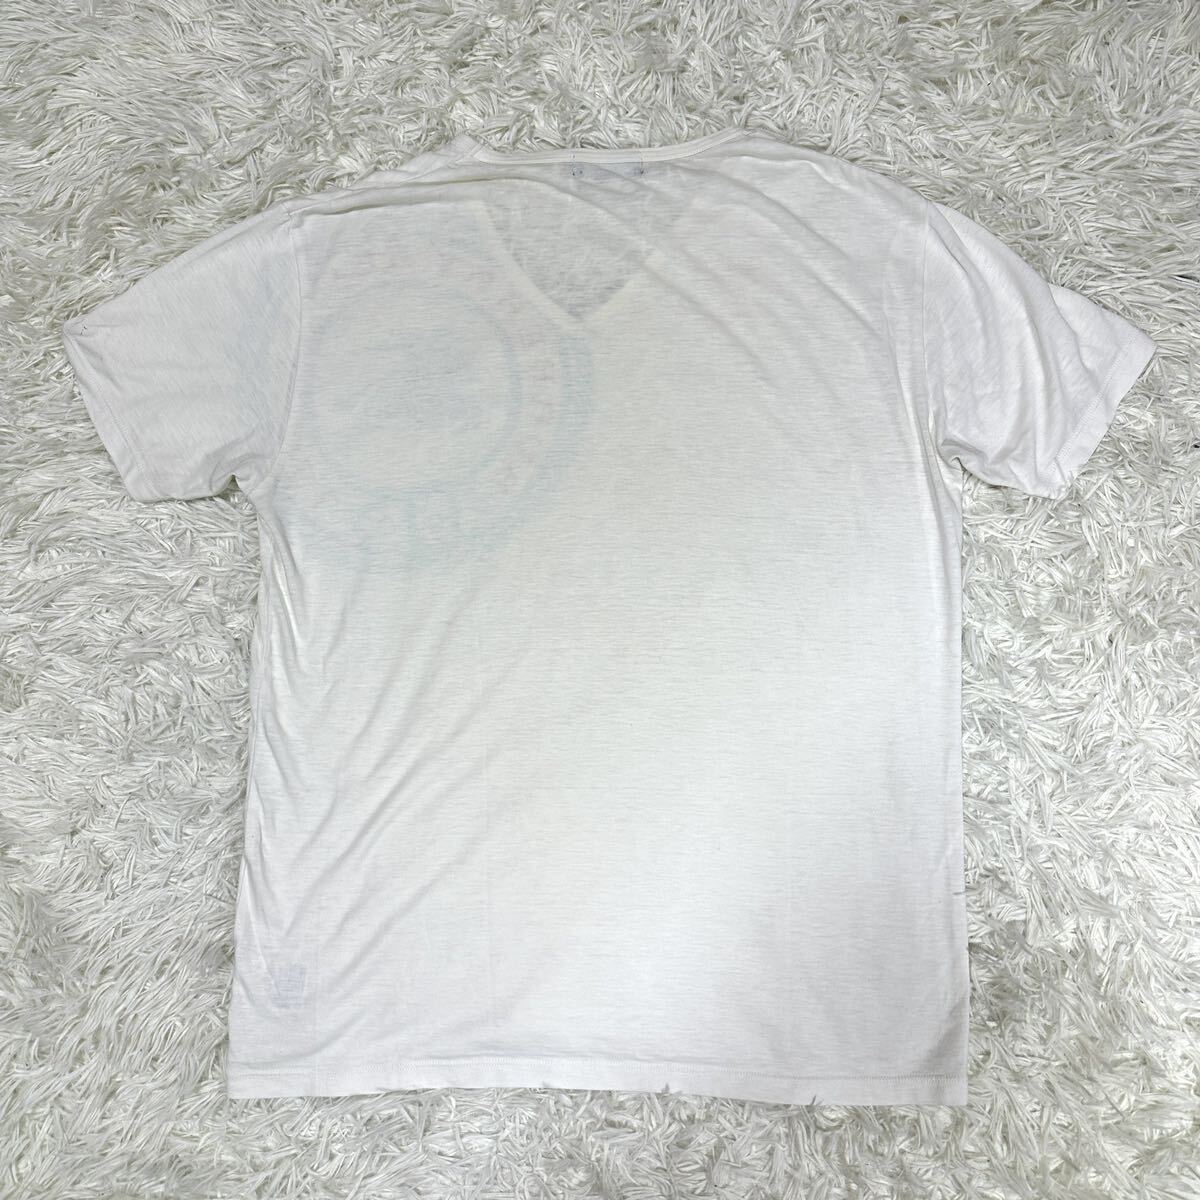 BURBERRY BLACK LABEL バーバリーブラックレーベル Tシャツ 半袖Tシャツ ホワイト ホースロゴ サイズ3の画像2